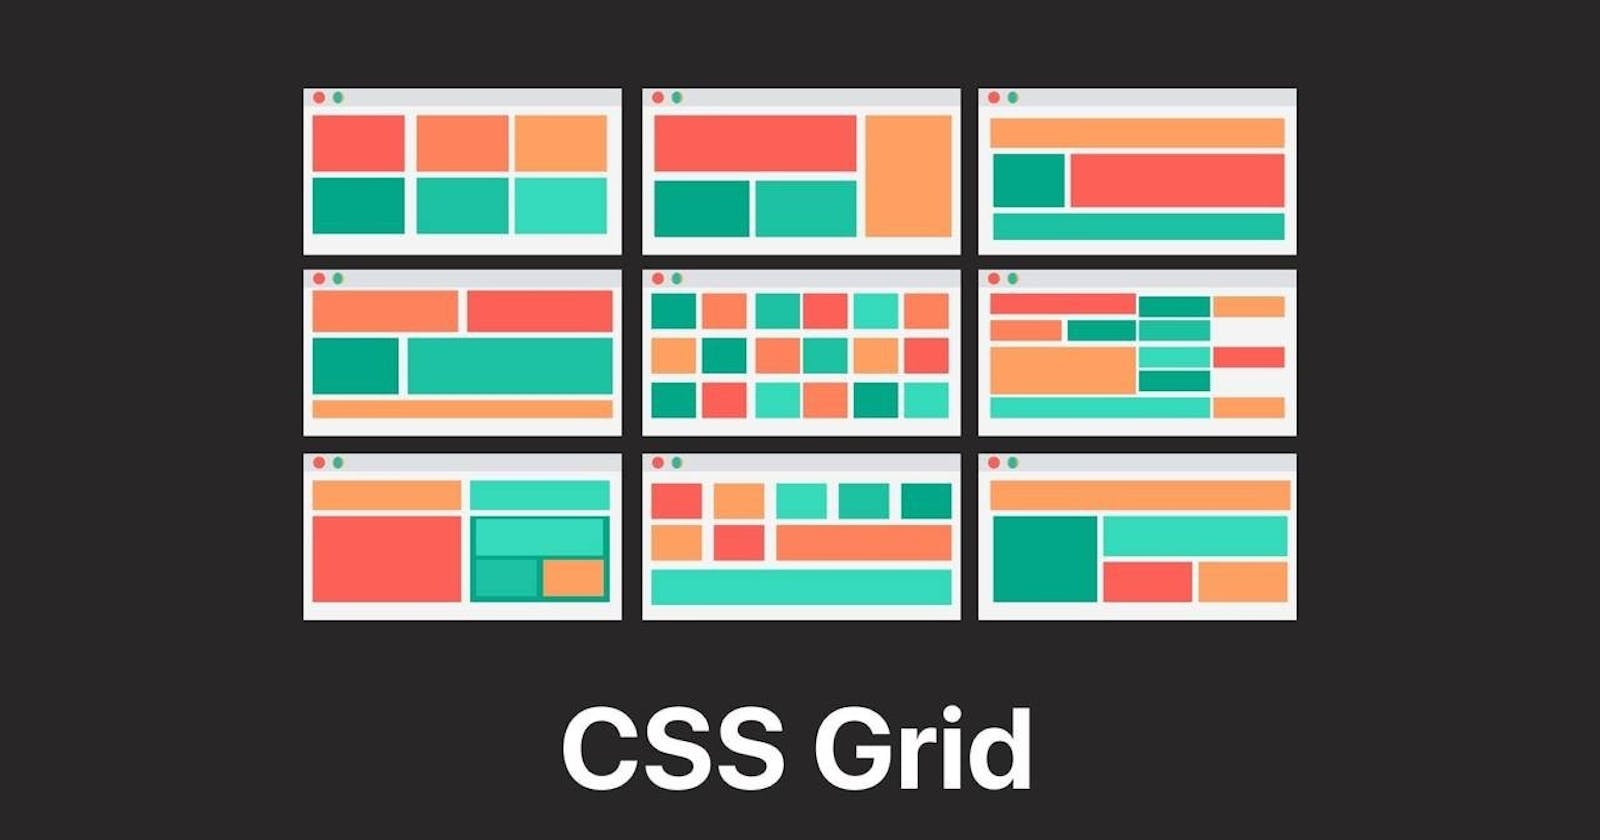 Understanding CSS Grid